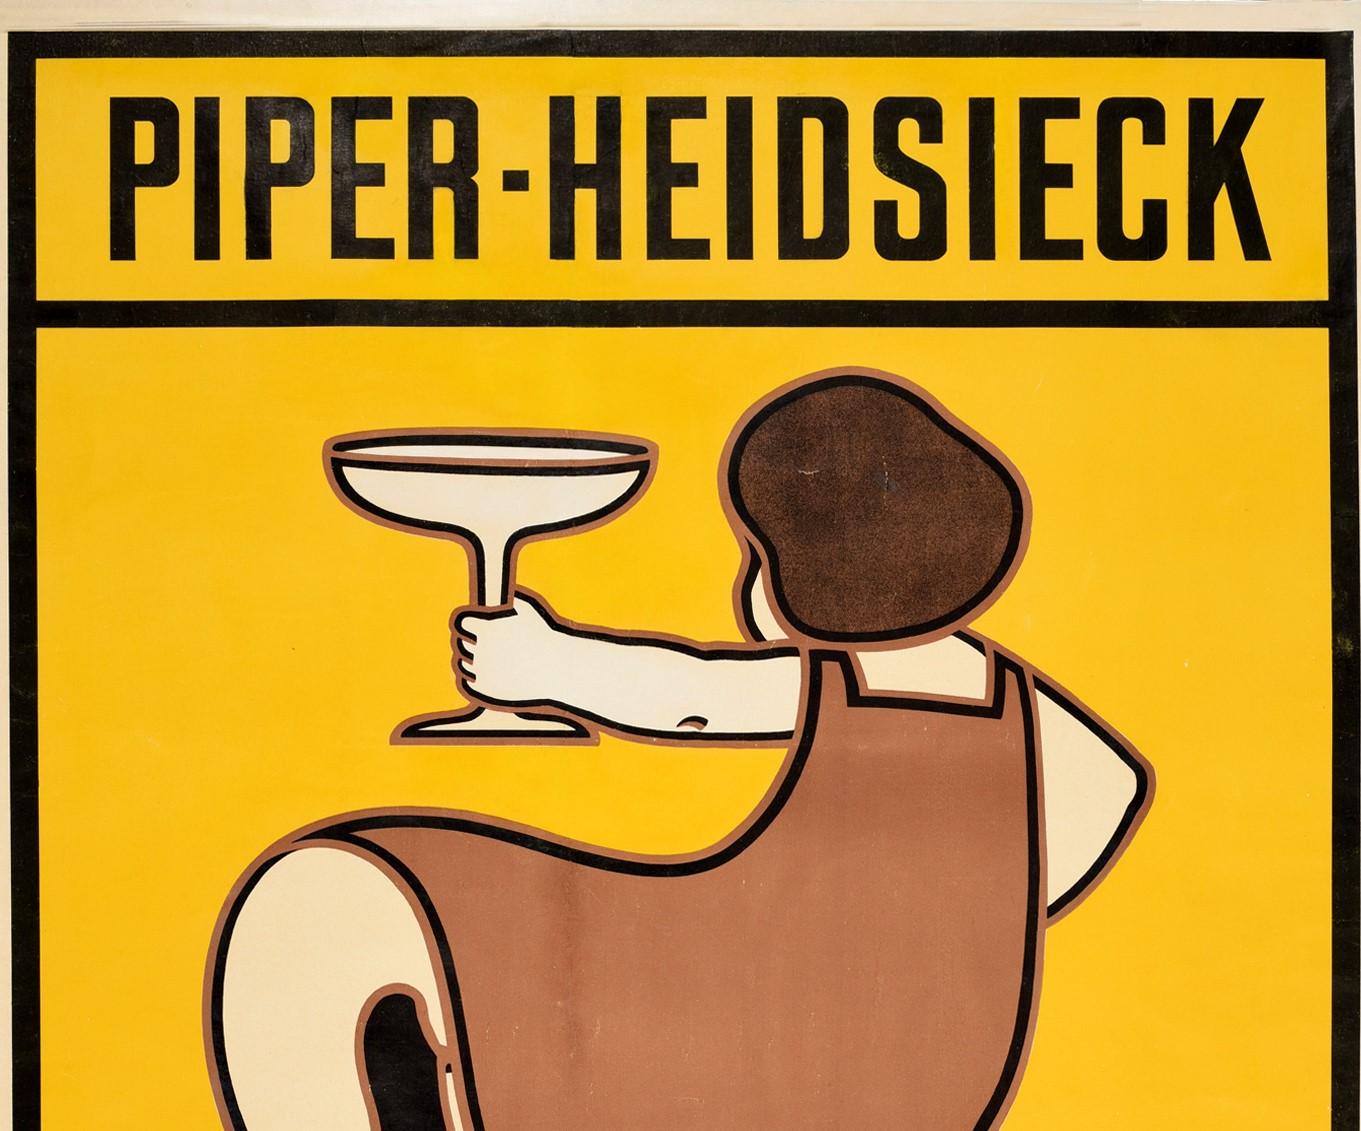 Affiche publicitaire originale pour le champagne Piper-Heidsieck, représentant une dame tenant une grande coupe de champagne sur un fond jaune, avec les lettres en gras au-dessus et au-dessous des lignes de marge encadrées. Piper Heidsieck a été